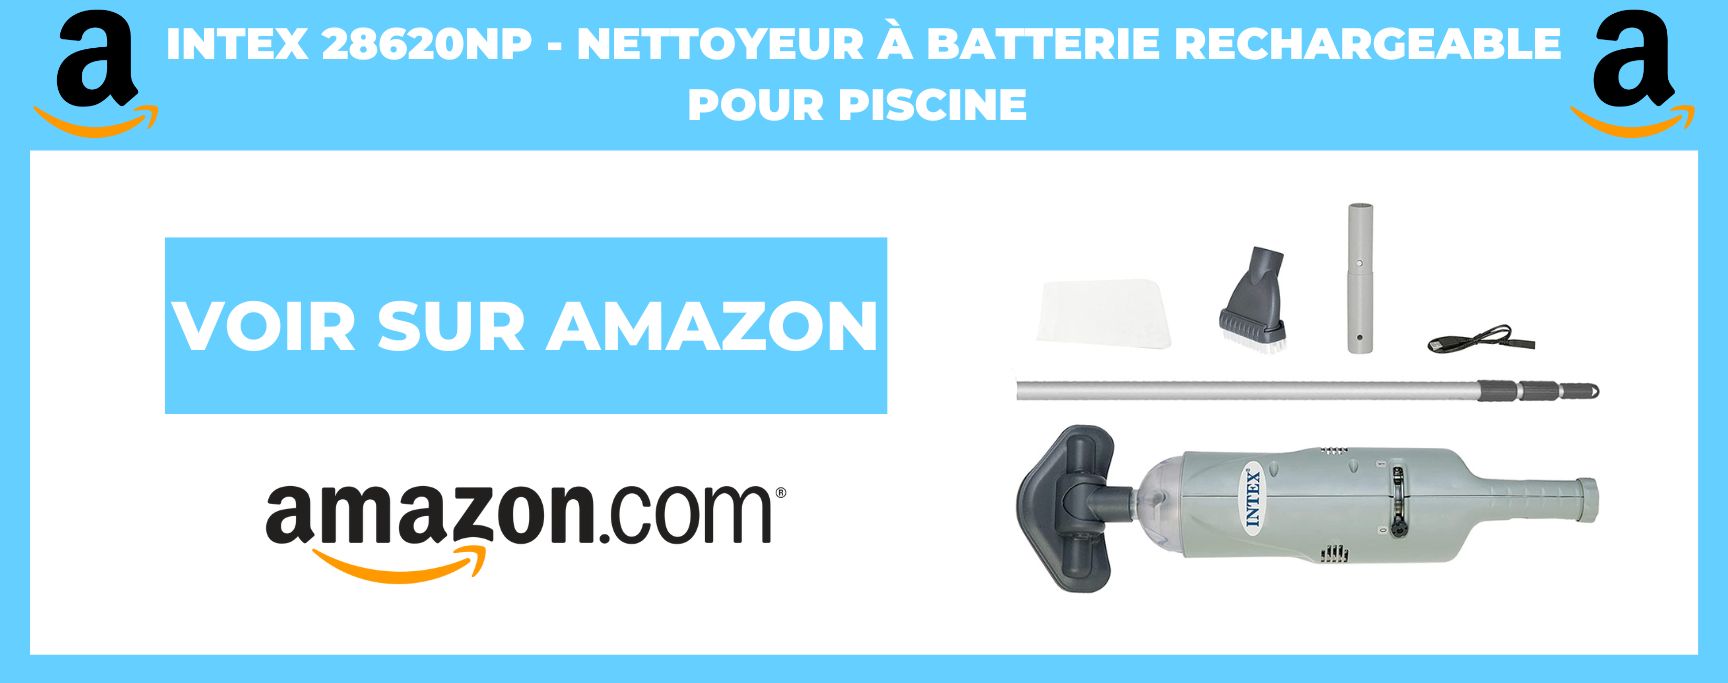 Intex 28620NP - Nettoyeur à Batterie Rechargeable pour Piscine